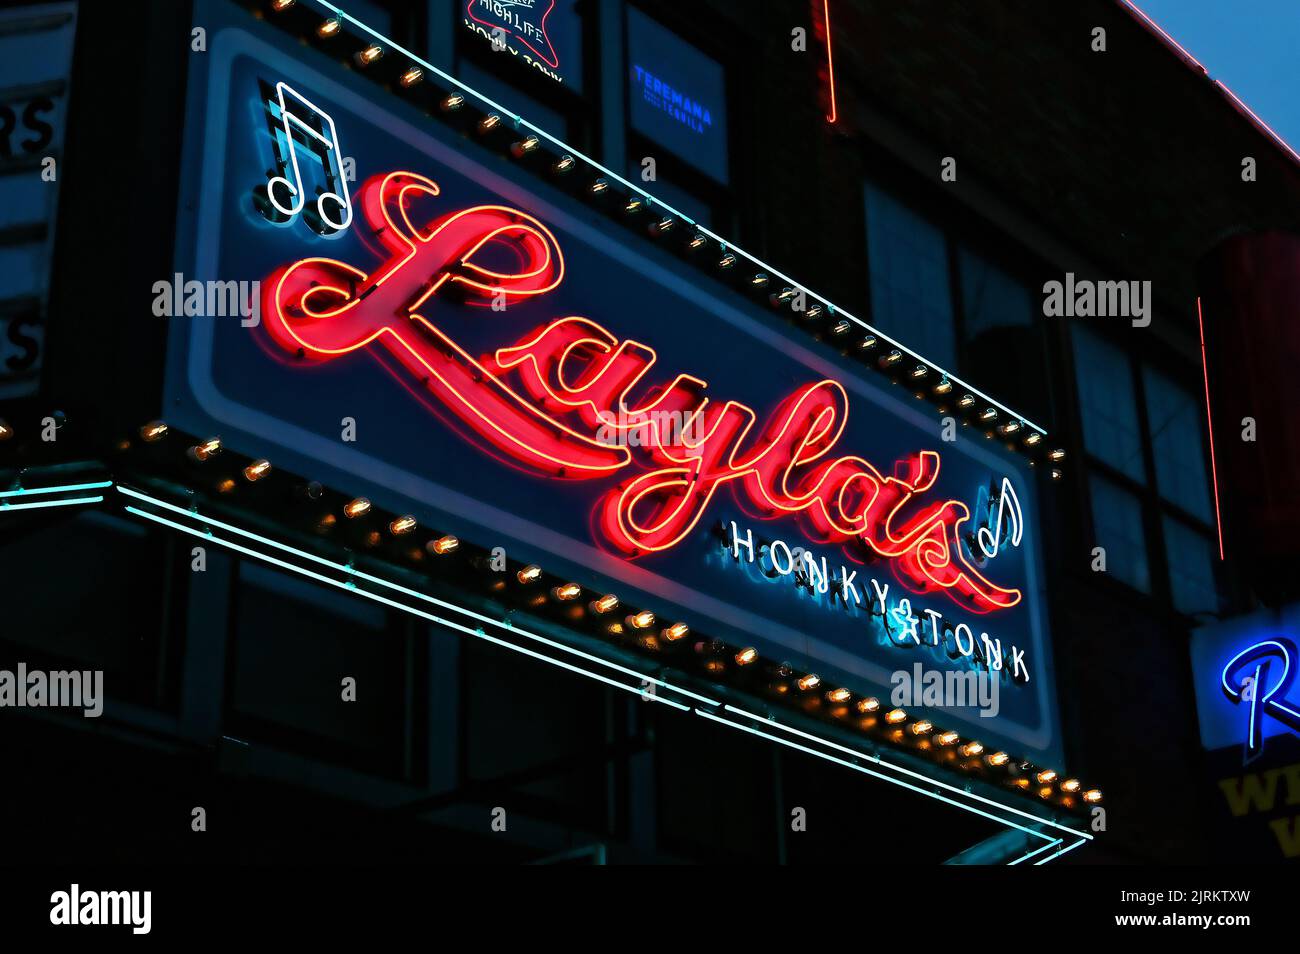 Leuchtreklame Layla«s auf dem Broadway; Nashville, Tennessee, Vereinigte Staaten von Amerika Stock Photo